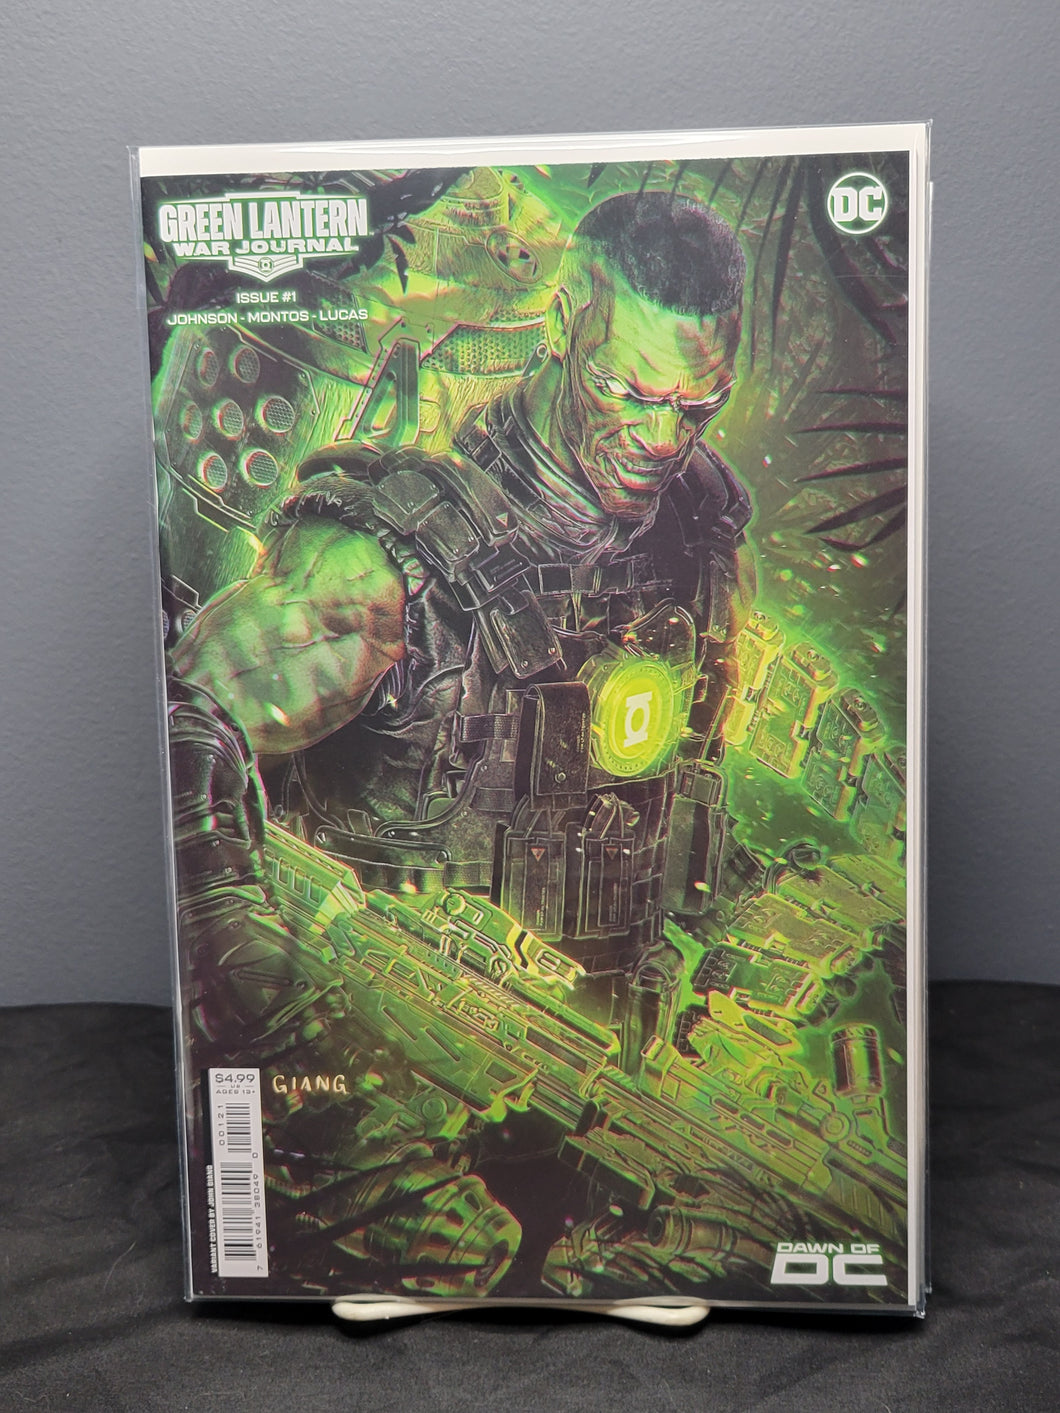 Green Lantern War Journal #1 Giang Variant